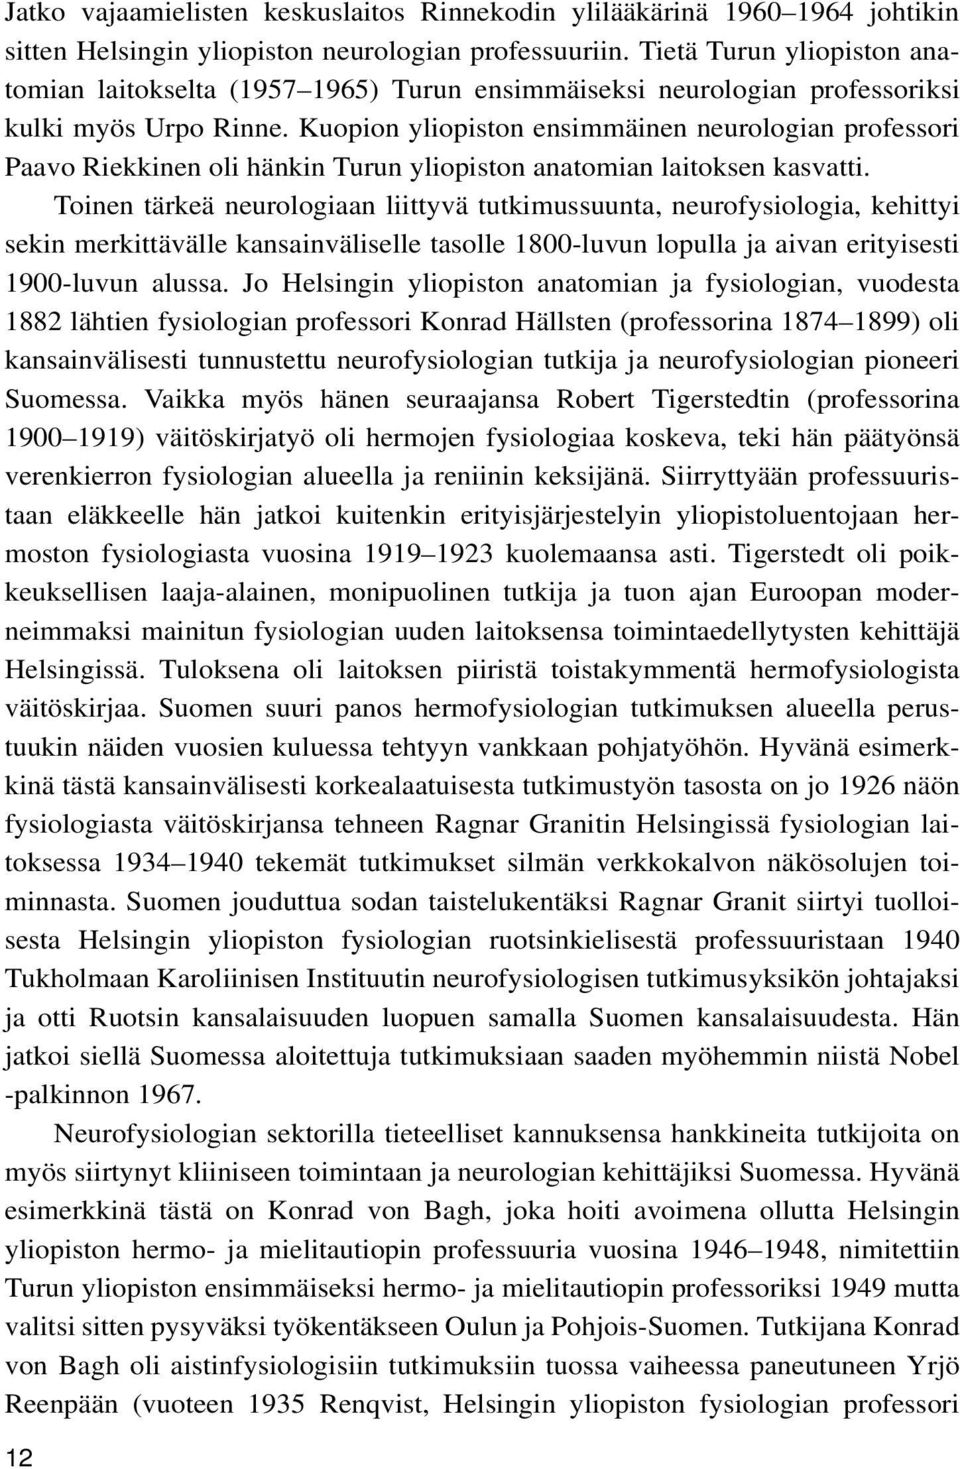 Kuopion yliopiston ensimmäinen neurologian professori Paavo Riekkinen oli hänkin Turun yliopiston anatomian laitoksen kasvatti.